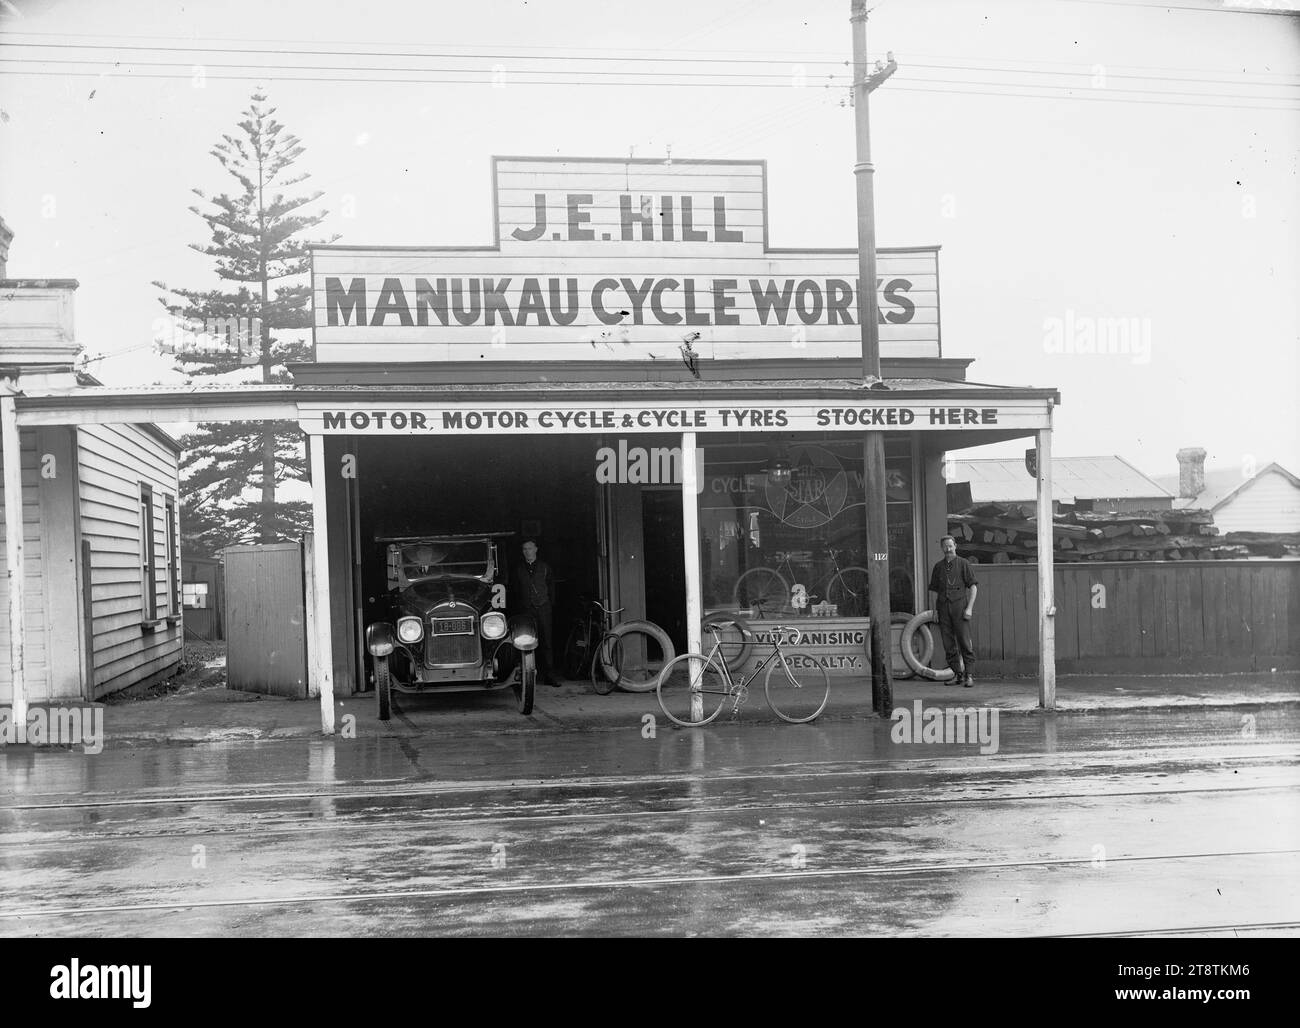 J E Hill, Manukau Cycle Works, Onehunga, View of Manukau Cycle Works, Victoria Street, Onehunga (Eigentümer J E Hill) mit einem Auto, das im Eingang der Garage auf der linken Seite des Ladens geparkt ist. Ein Fahrrad lehnt sich an die Verandastütze vor dem Laden, und ein Mann steht rechts und blickt auf den Fotografen. Die Werbung auf der Ladenfront lautet "Motor-, Motorrad- und Fahrradreifen hier vorrätig" und "Vulkanisieren einer Spezialität". Eine Norfolk-Kiefer wächst hinter dem nebenan gelegenen Grundstück. Hinter dem Zaun des Nachbargrundstücks ist Holz gestapelt Stockfoto